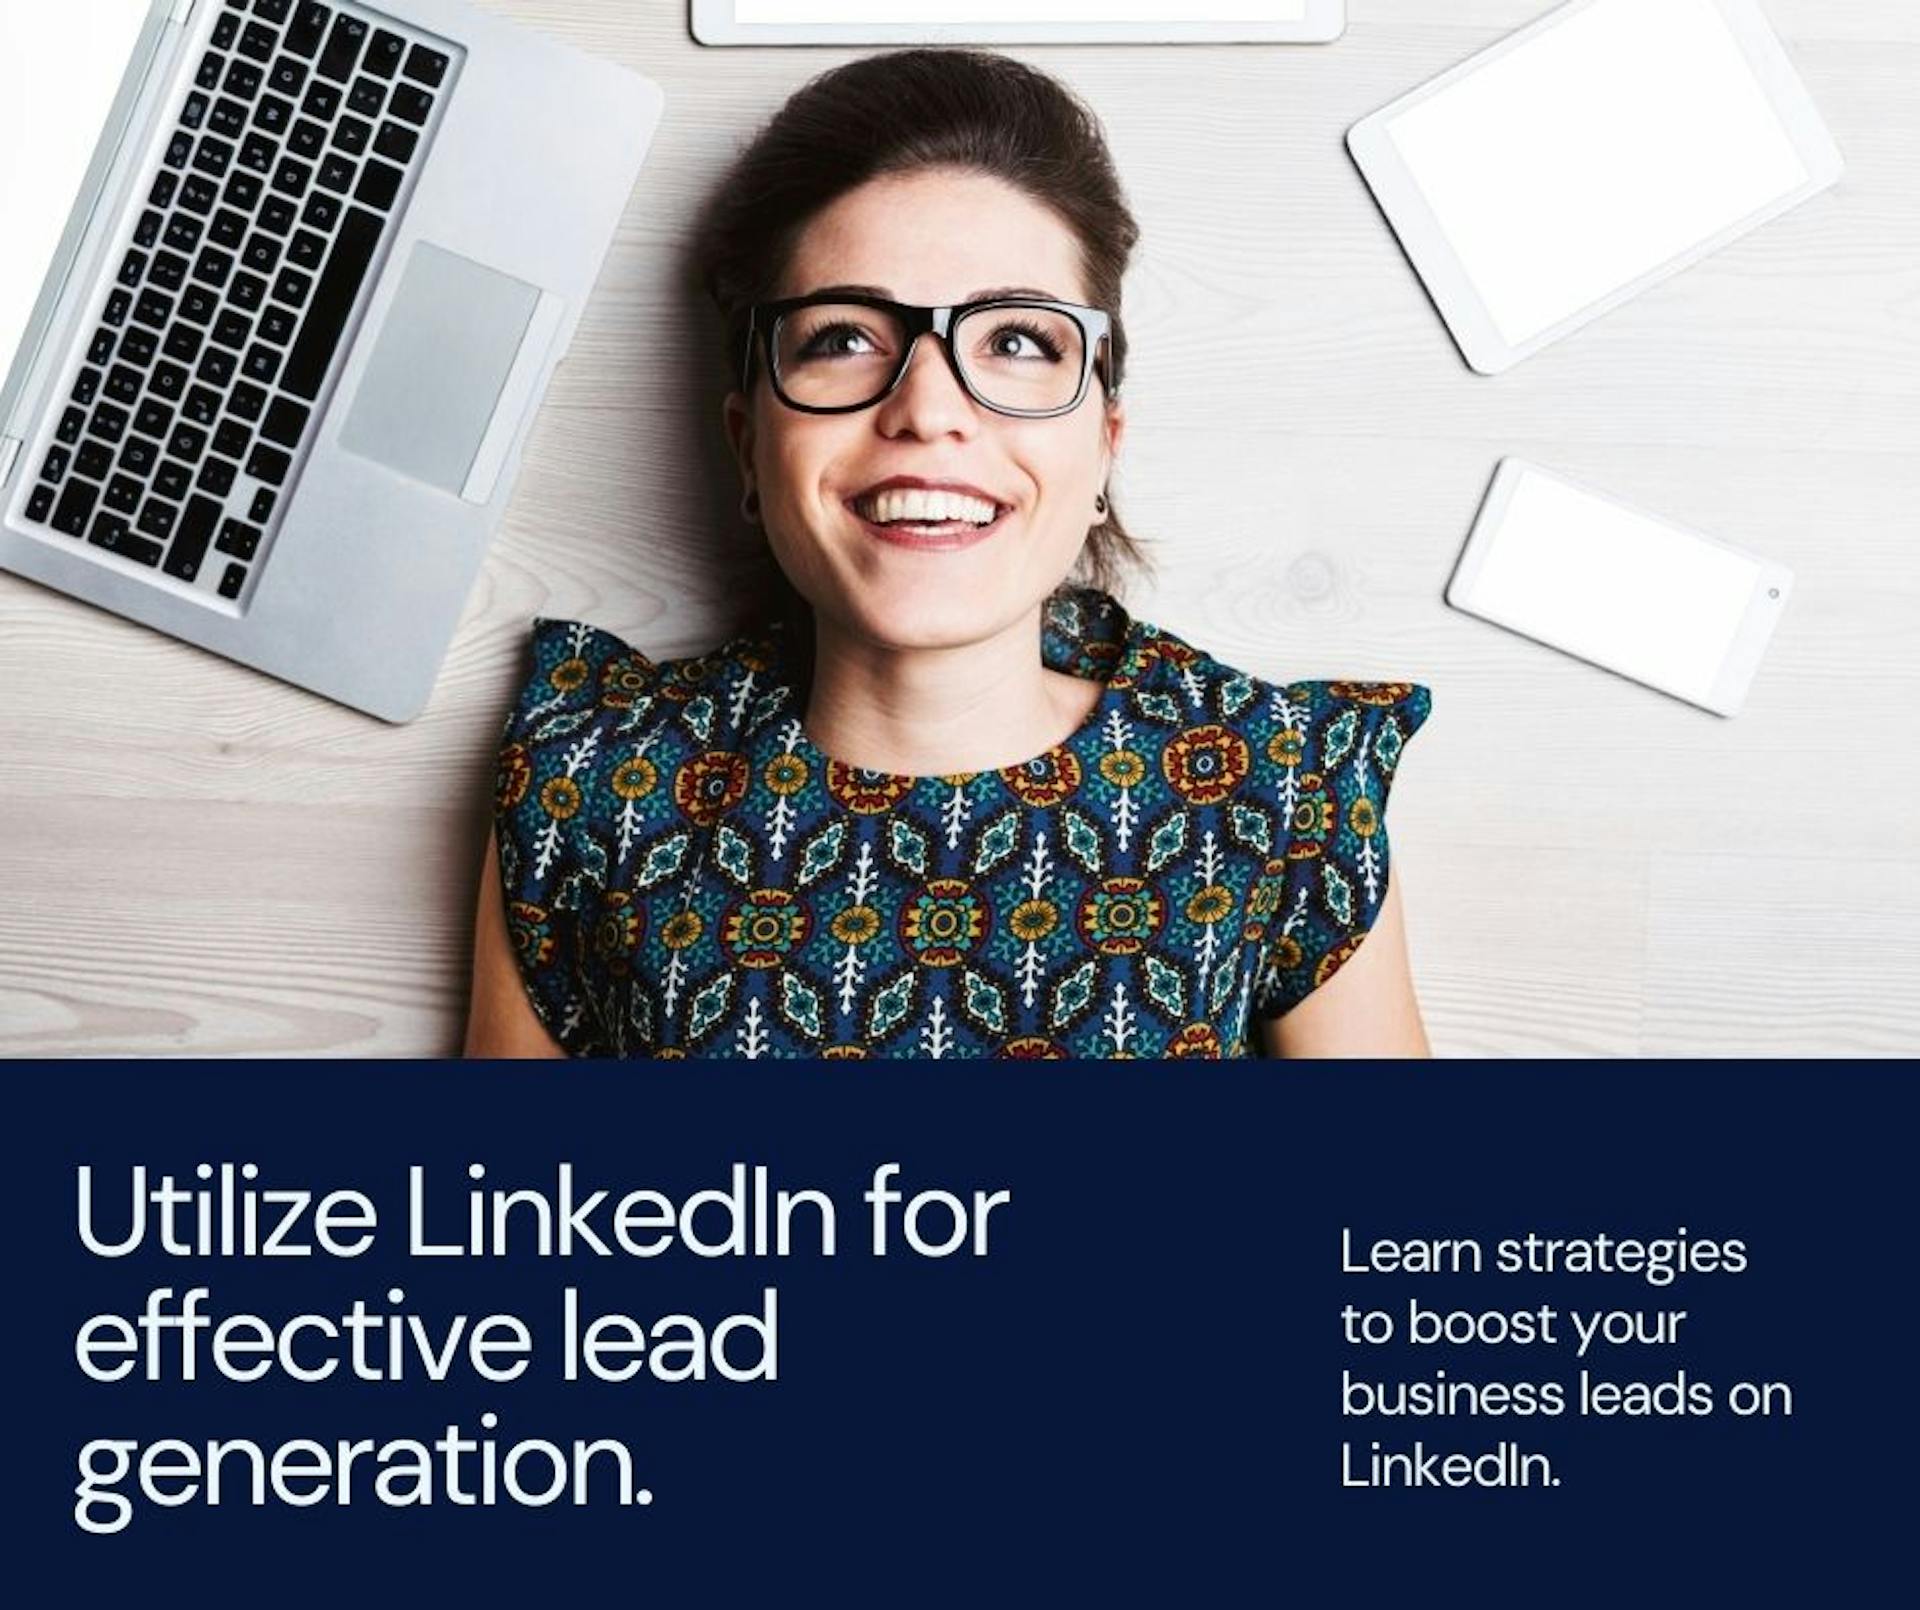 featured image - Làm cách nào để có được khách hàng tiềm năng kinh doanh từ LinkedIn?